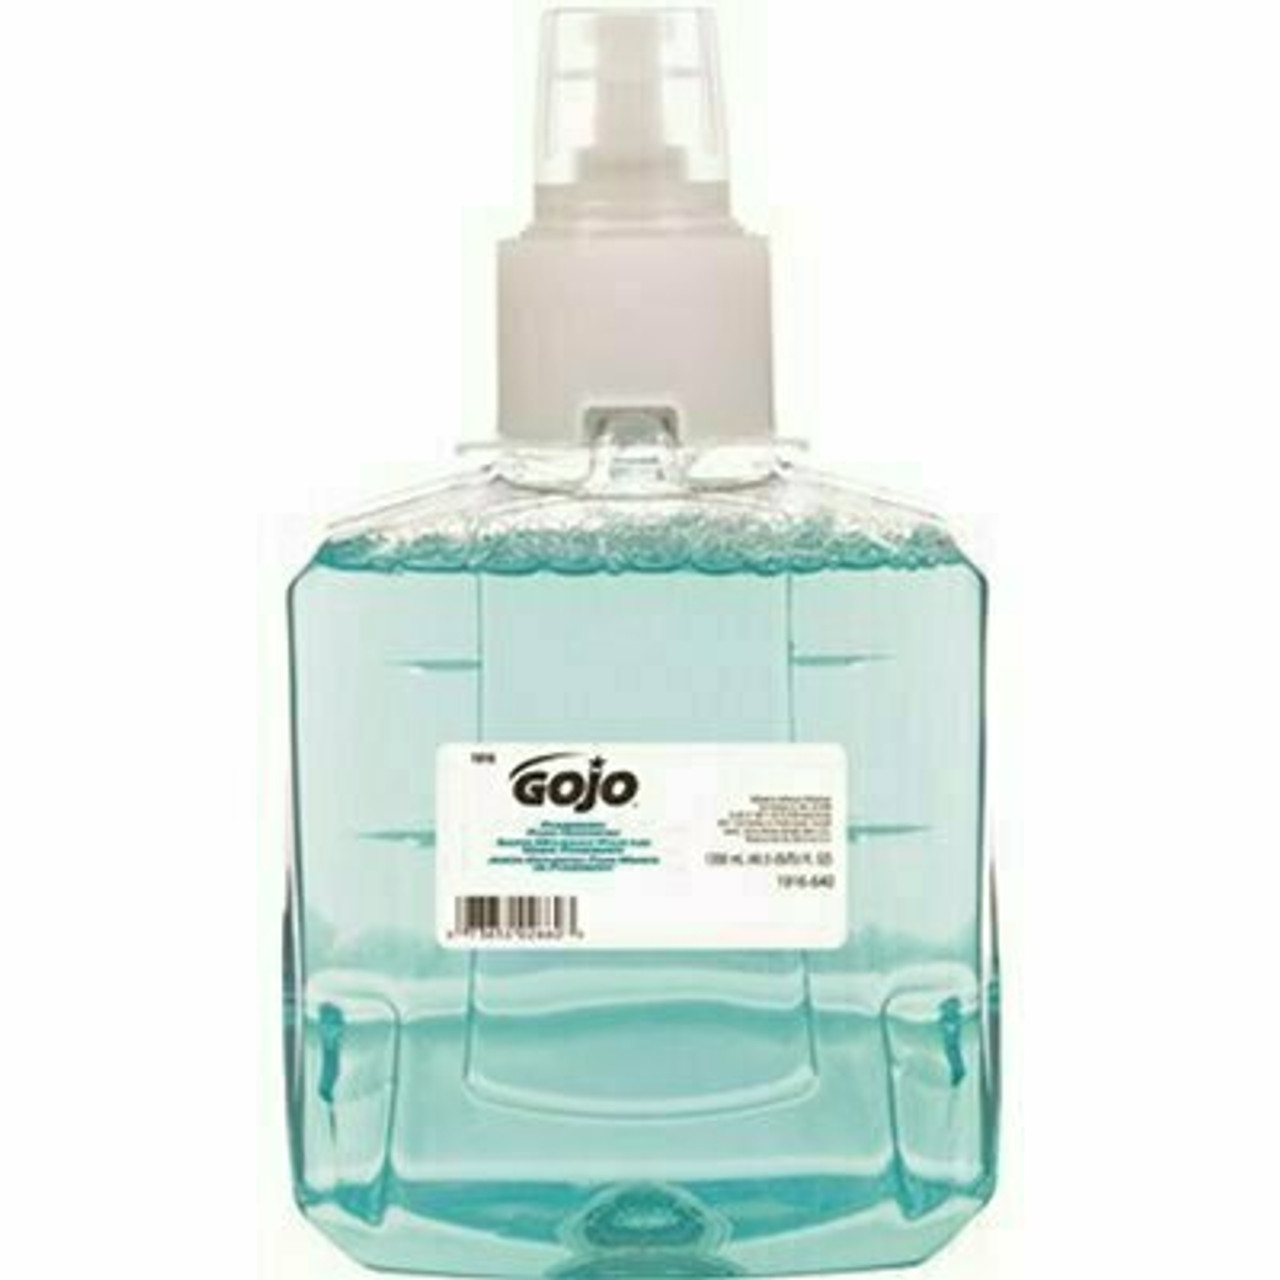 Gojo Pomeberry Foam Handwash, Pomegranate Scent, 1200 Ml Hand Soap Refill For Ltx-12 Dispenser (Pack Of 2)